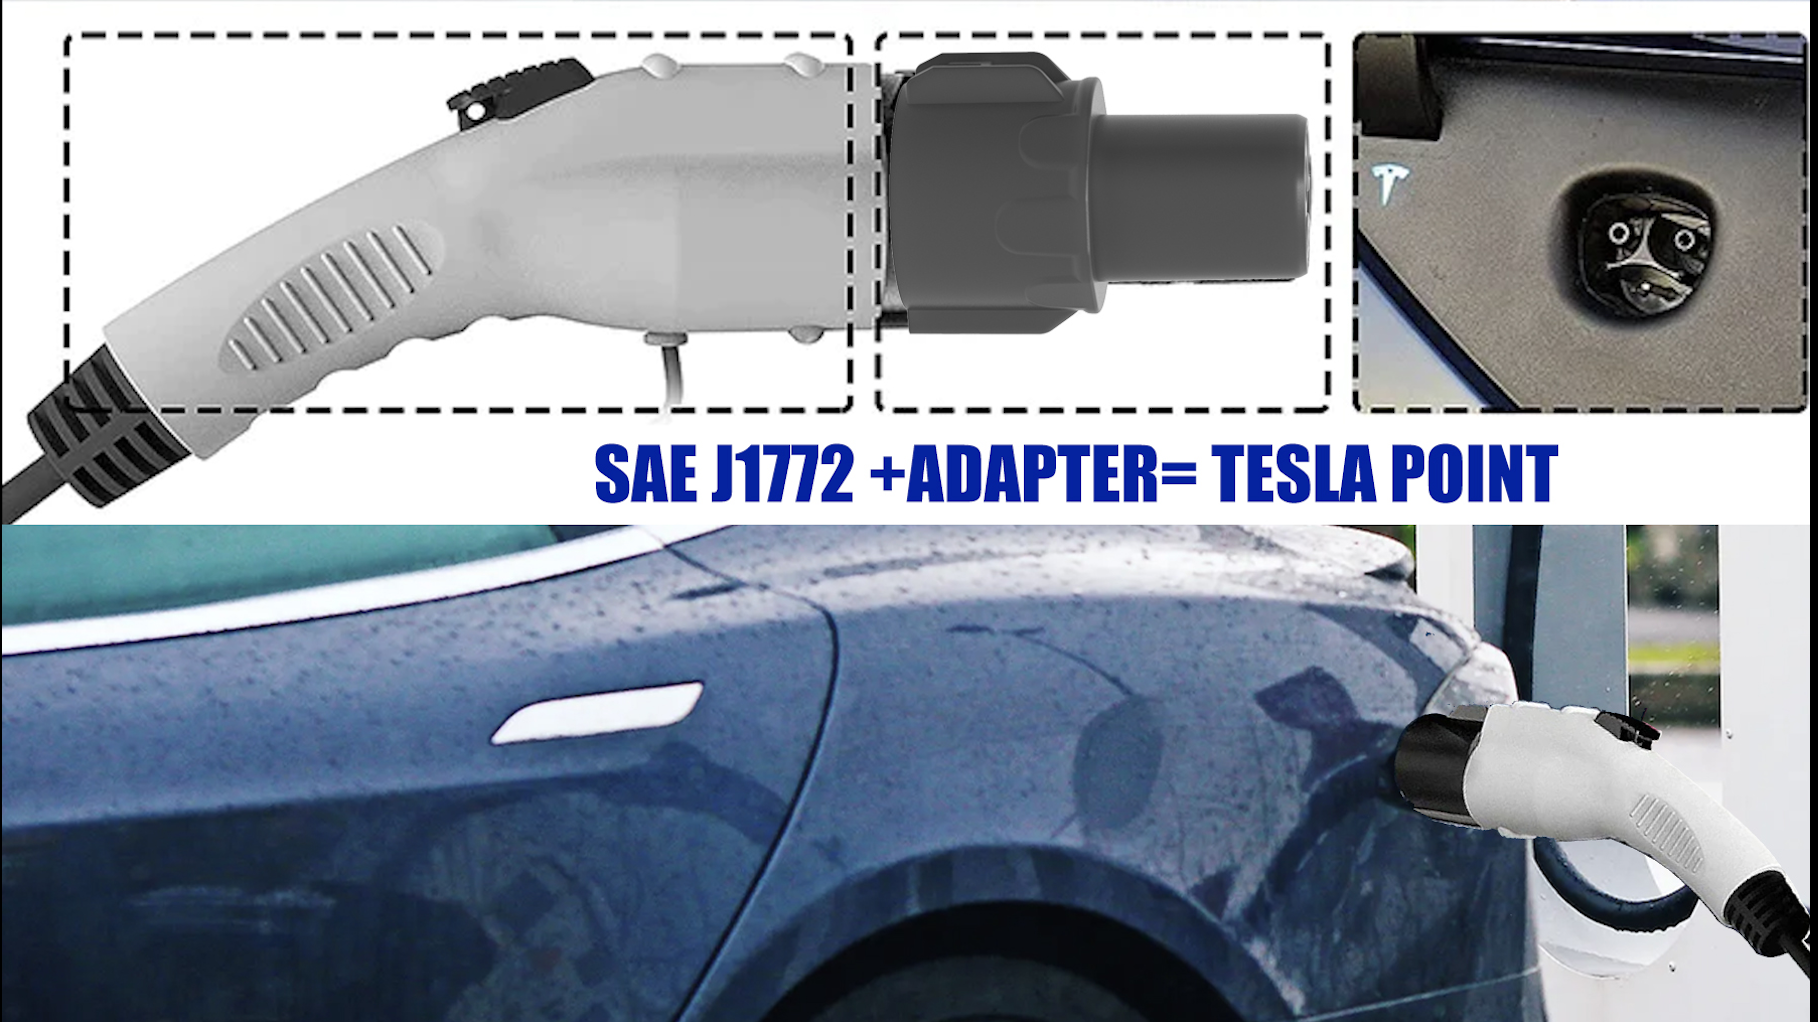 Ev lādētāja adapteris uz Tesla, elektrības lādētājs uz Tesla adapteri, J1722 adapteris, J1722 adapteris uz Telsa, J1722 uz Telsa adapteris, Telsa adapteris, 1. tips uz Telsa adapteri, EV uzlādes adapteri, elektrības lādētāja adaptera adapteris, elektrības adaptera adapteris. ，Ev lādētājs ar adapteriem, EV lādētāja adaptera komplekts, elektriskā automašīnas lādētāja adapteris, EV spraudņa adapteris, elektriskā automašīnas lādētāja adaptera spraudnis, EV lādētāja spraudņa adapteris, EV automašīnas lādētāja adapteris, elektrības automašīnas lādētāja adapteris, elektrības automašīnas lādētāja adapteris, elektrības adapteris Adapteris, EV uzlādes adapteris, elektriskā lādētāja adapteris, elektriskie transportlīdzekļu adapteri, uzlādes punkta adapteris, elektrisko transportlīdzekļu uzlādes adapteri, 999